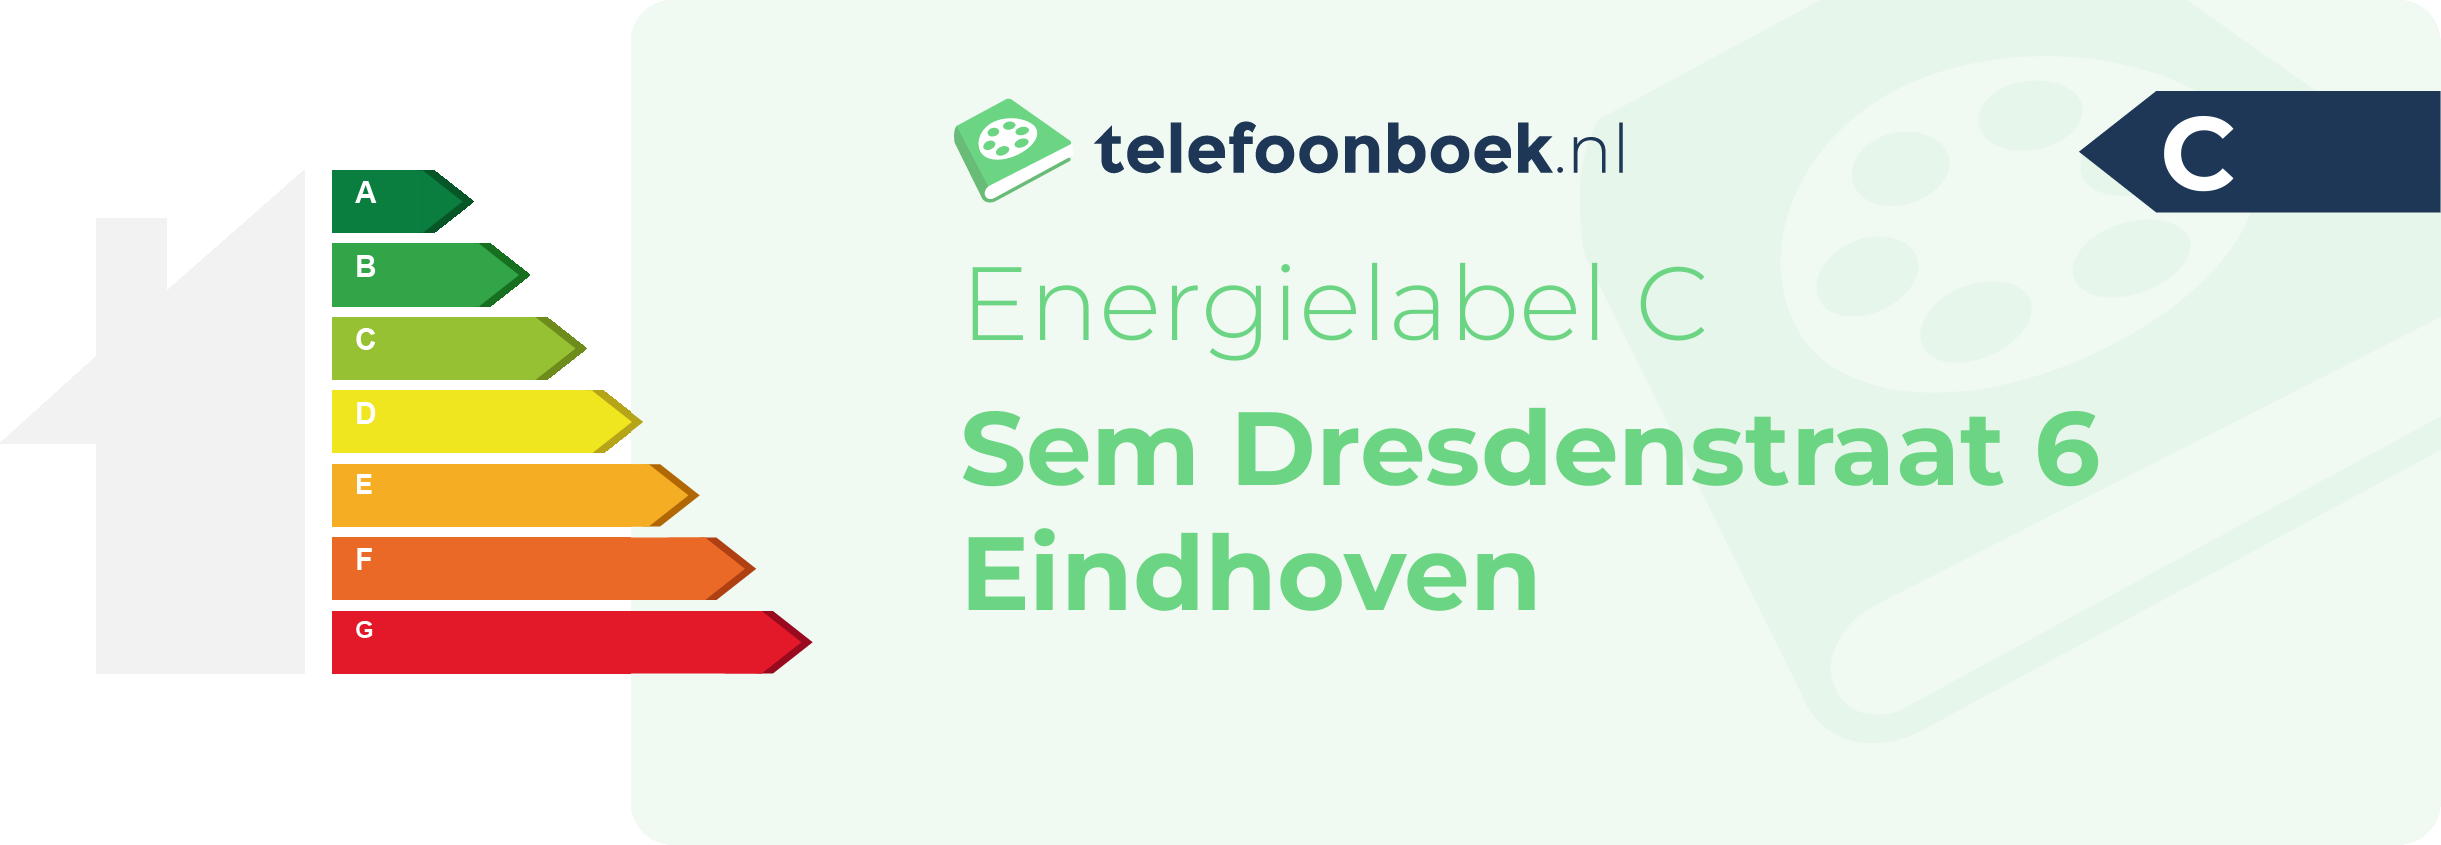 Energielabel Sem Dresdenstraat 6 Eindhoven